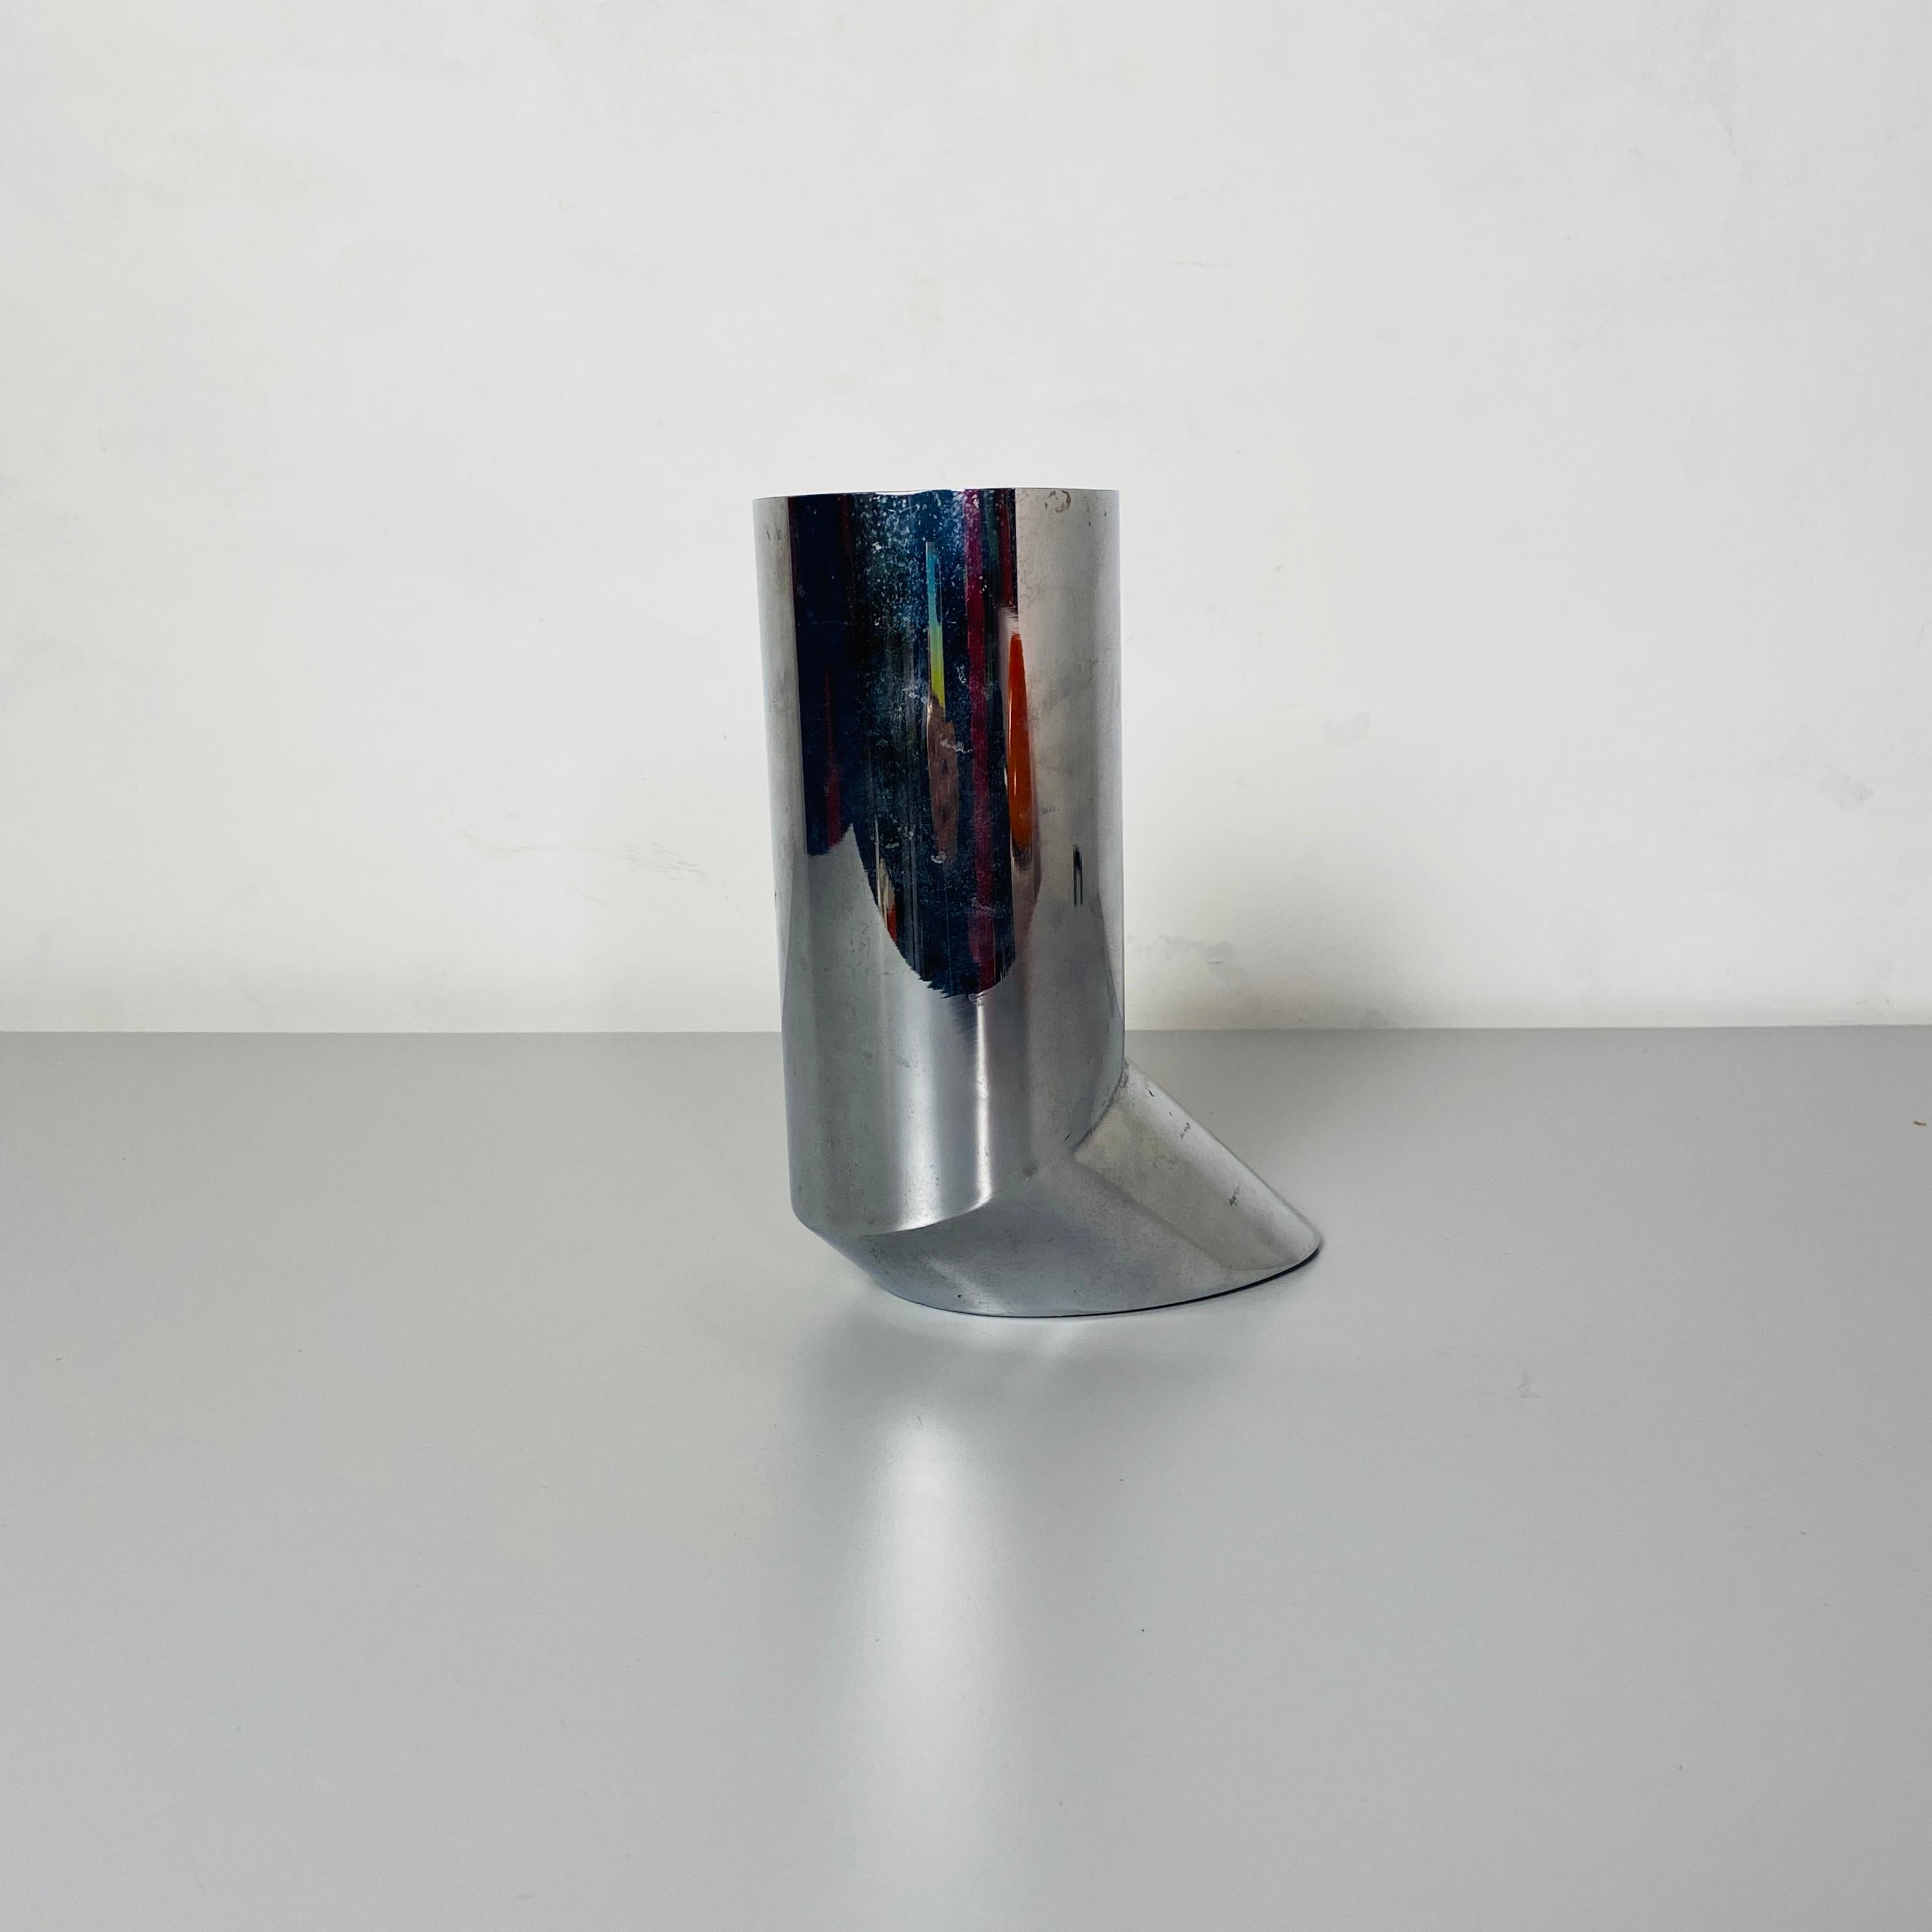 Late 20th Century Italian Mid-Century Modern Irregular Shaped Steel Vase, 1970s